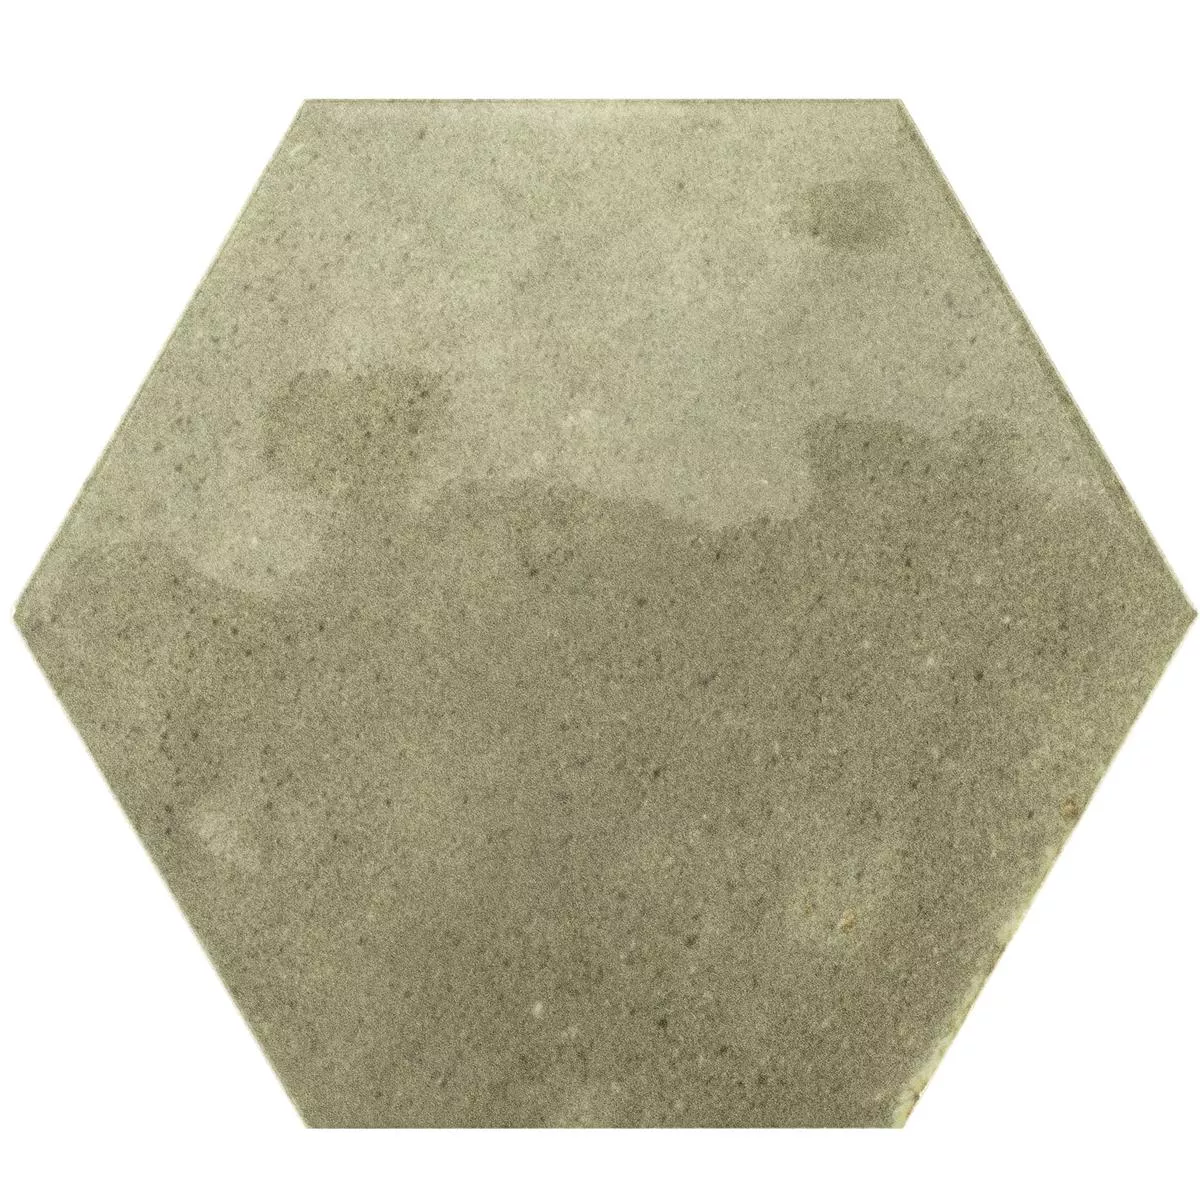 Sample Wandtegels Arosa Glanzend Gegolfd Hexagon Olijfgroen 17,3x15cm